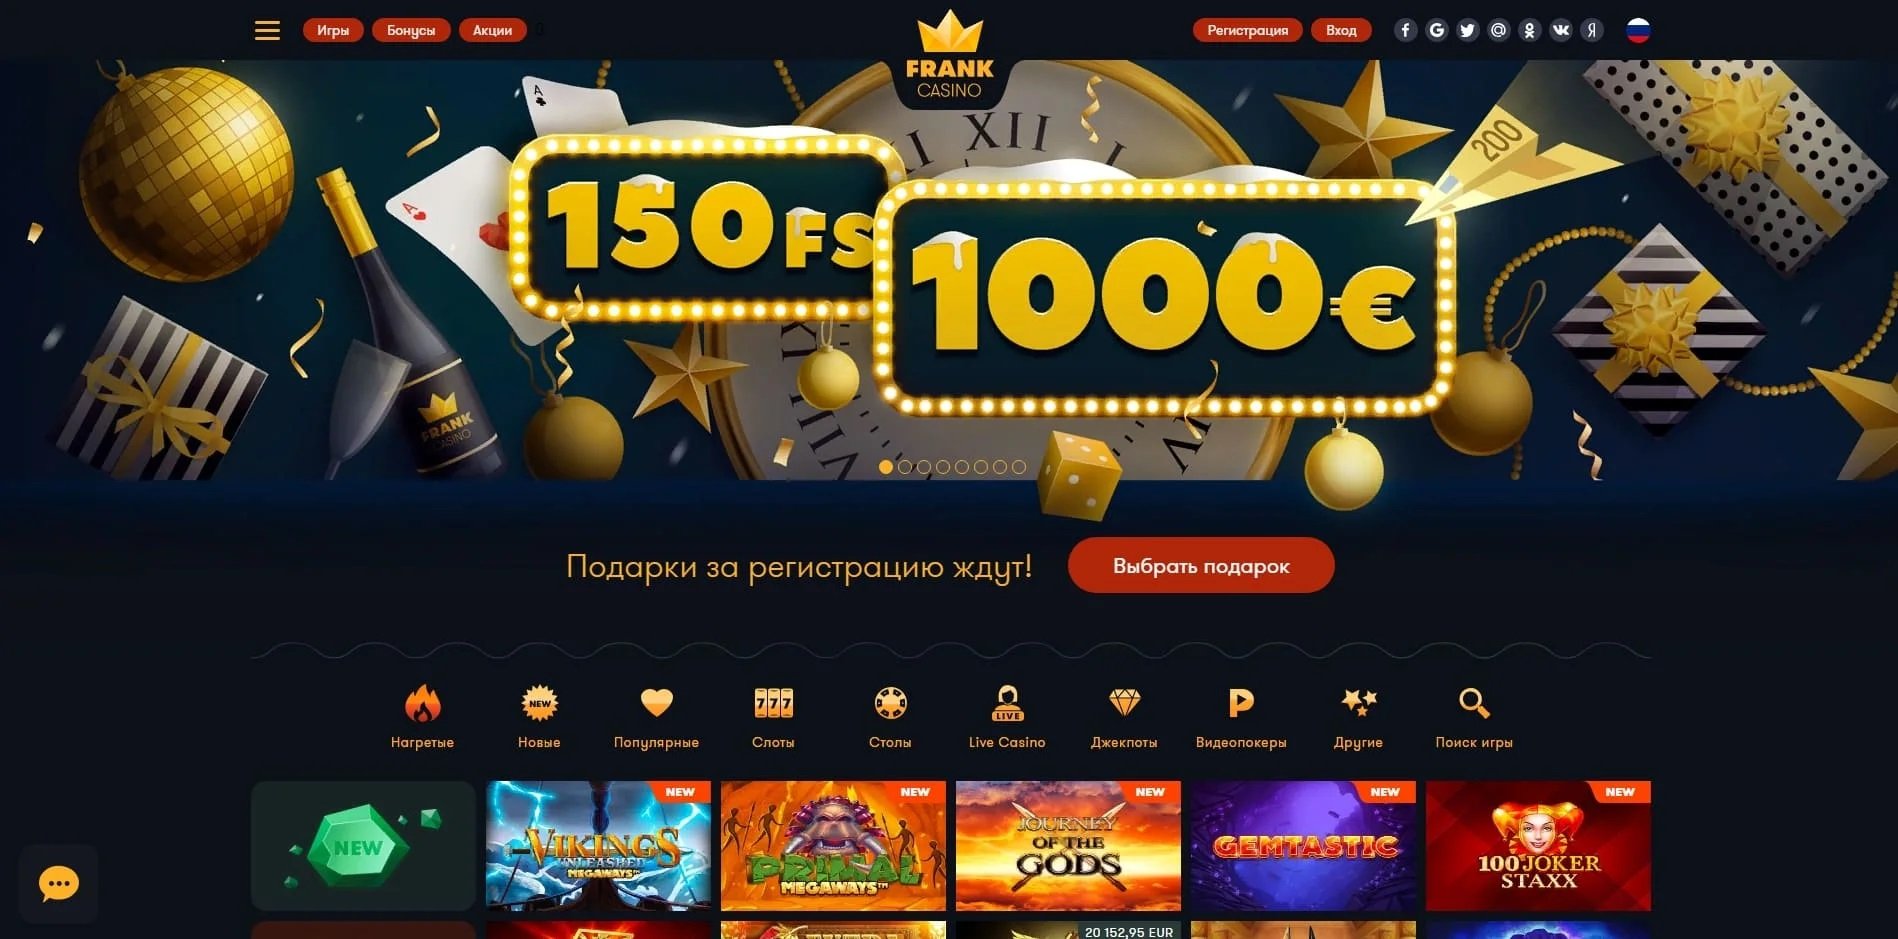 Играть во франк казино онлайн алко рулетка онлайн